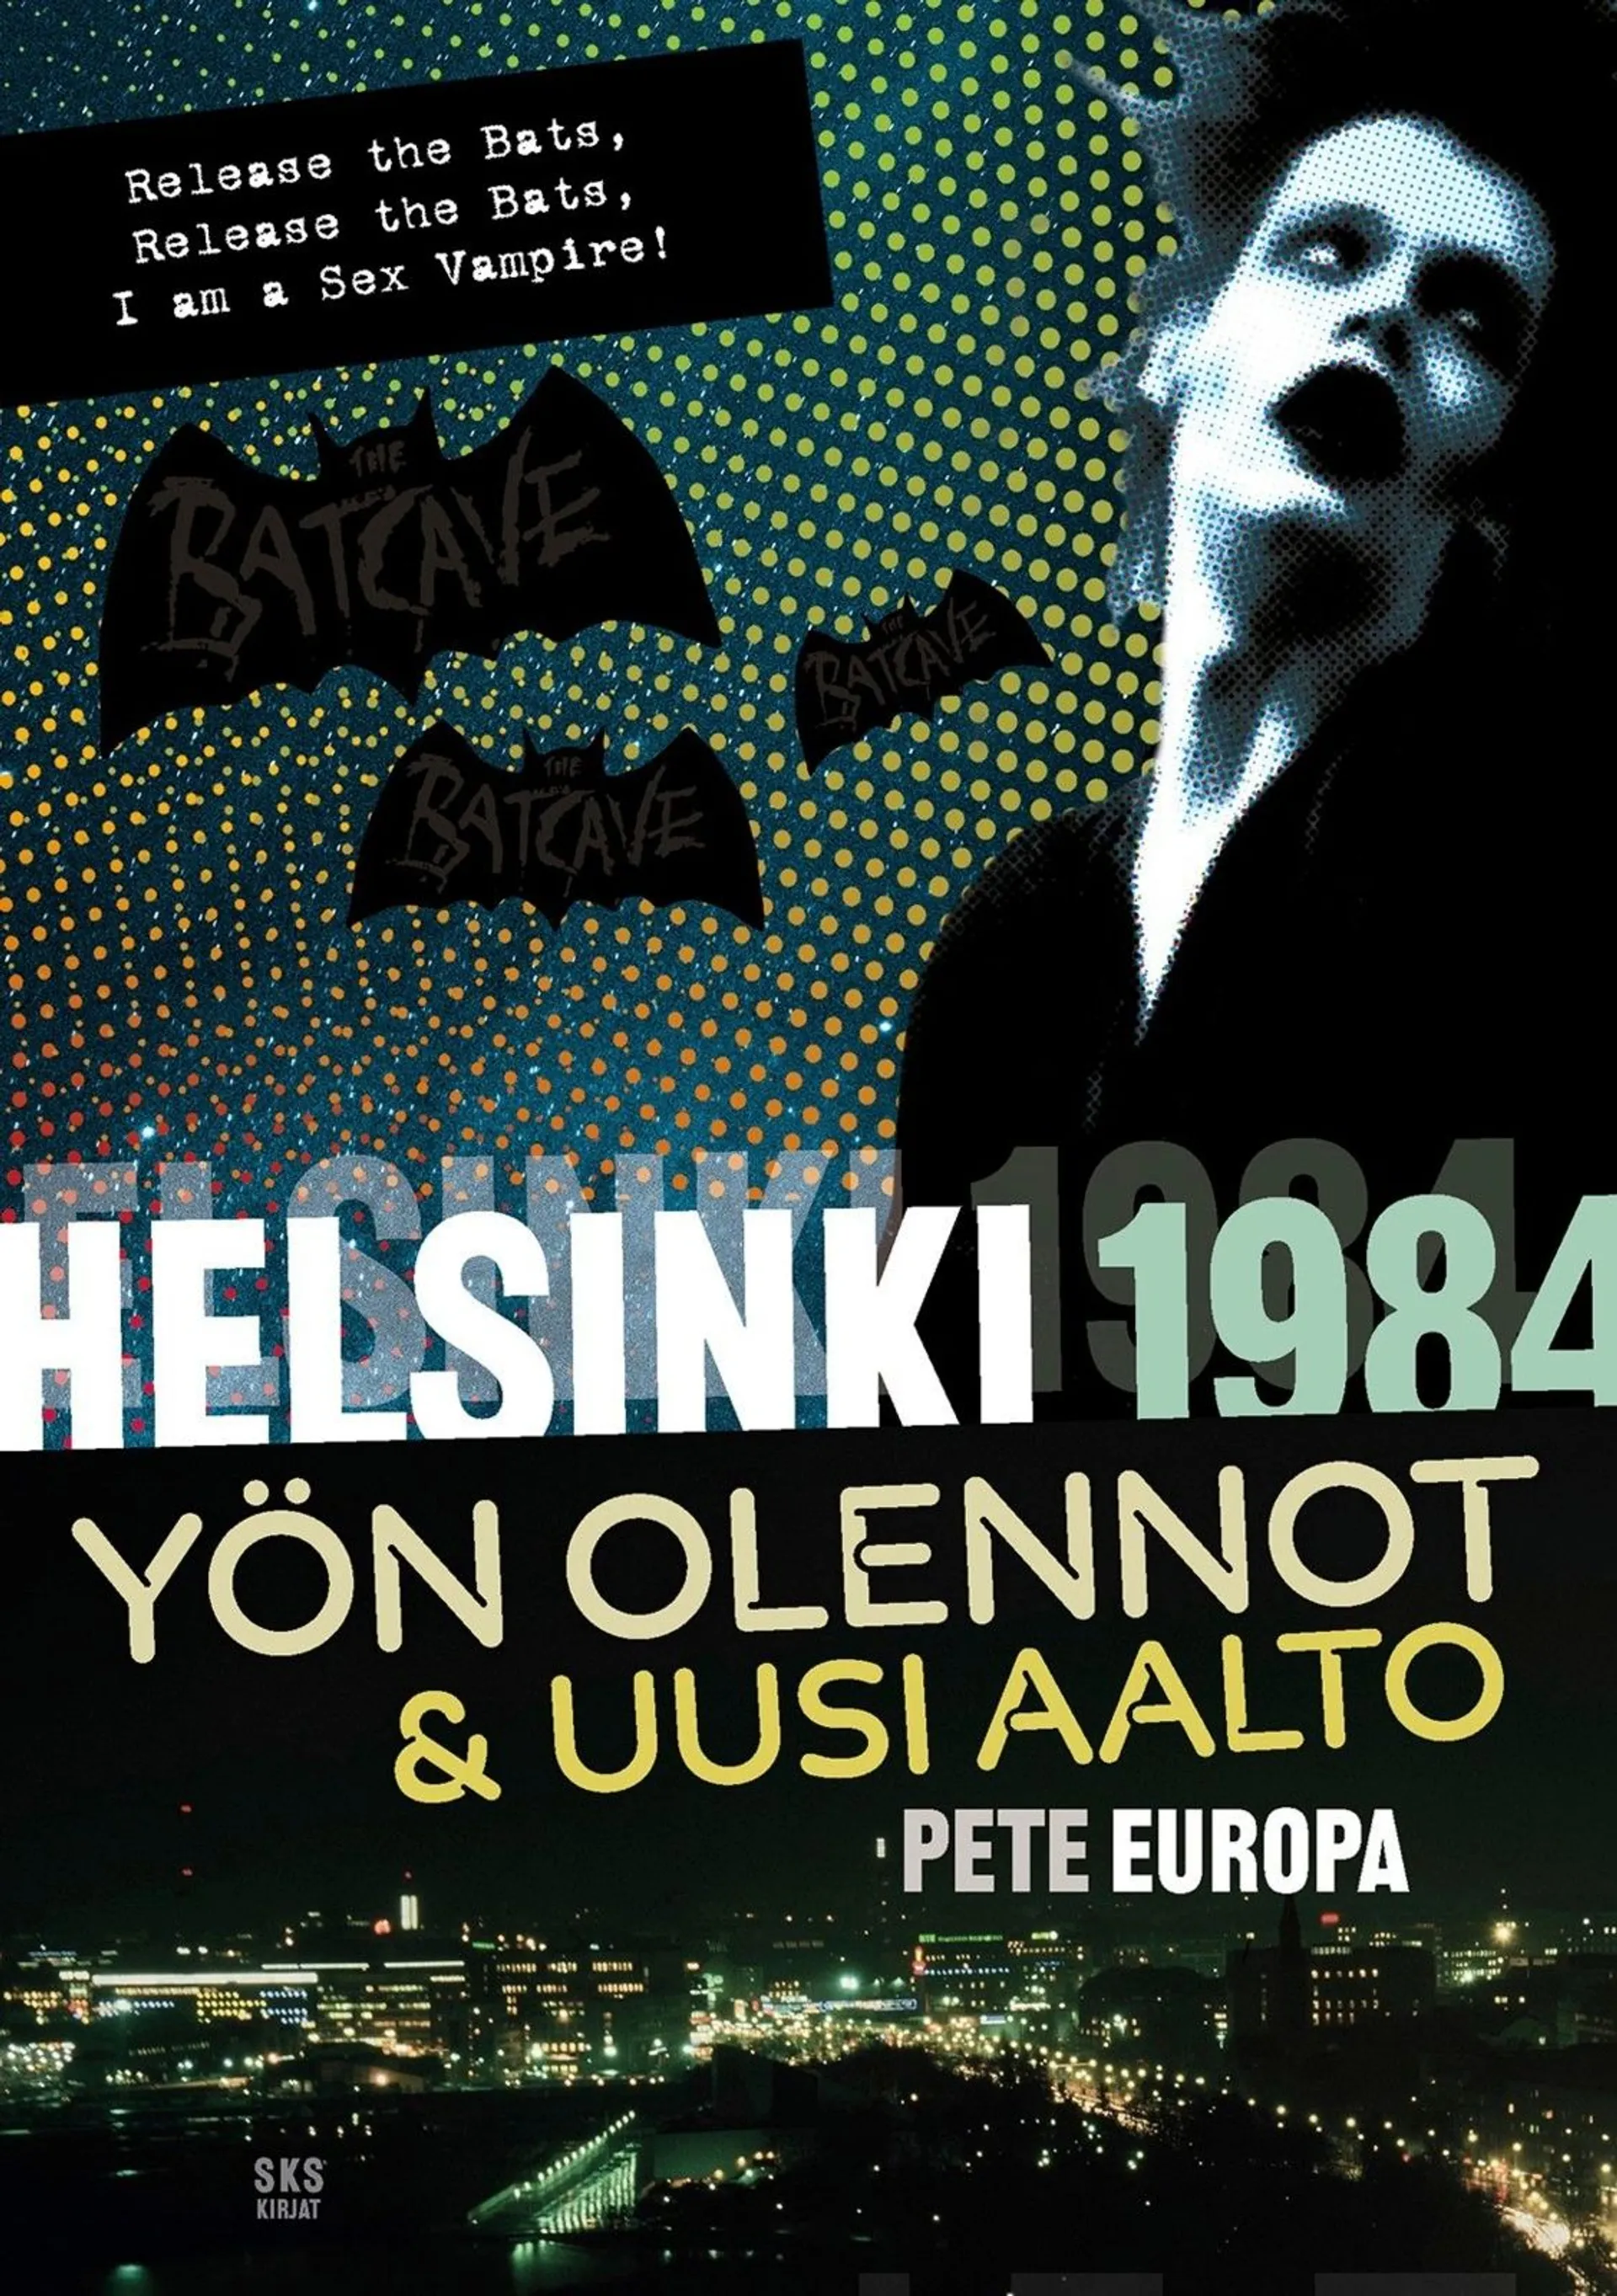 Europa, Helsinki 1984